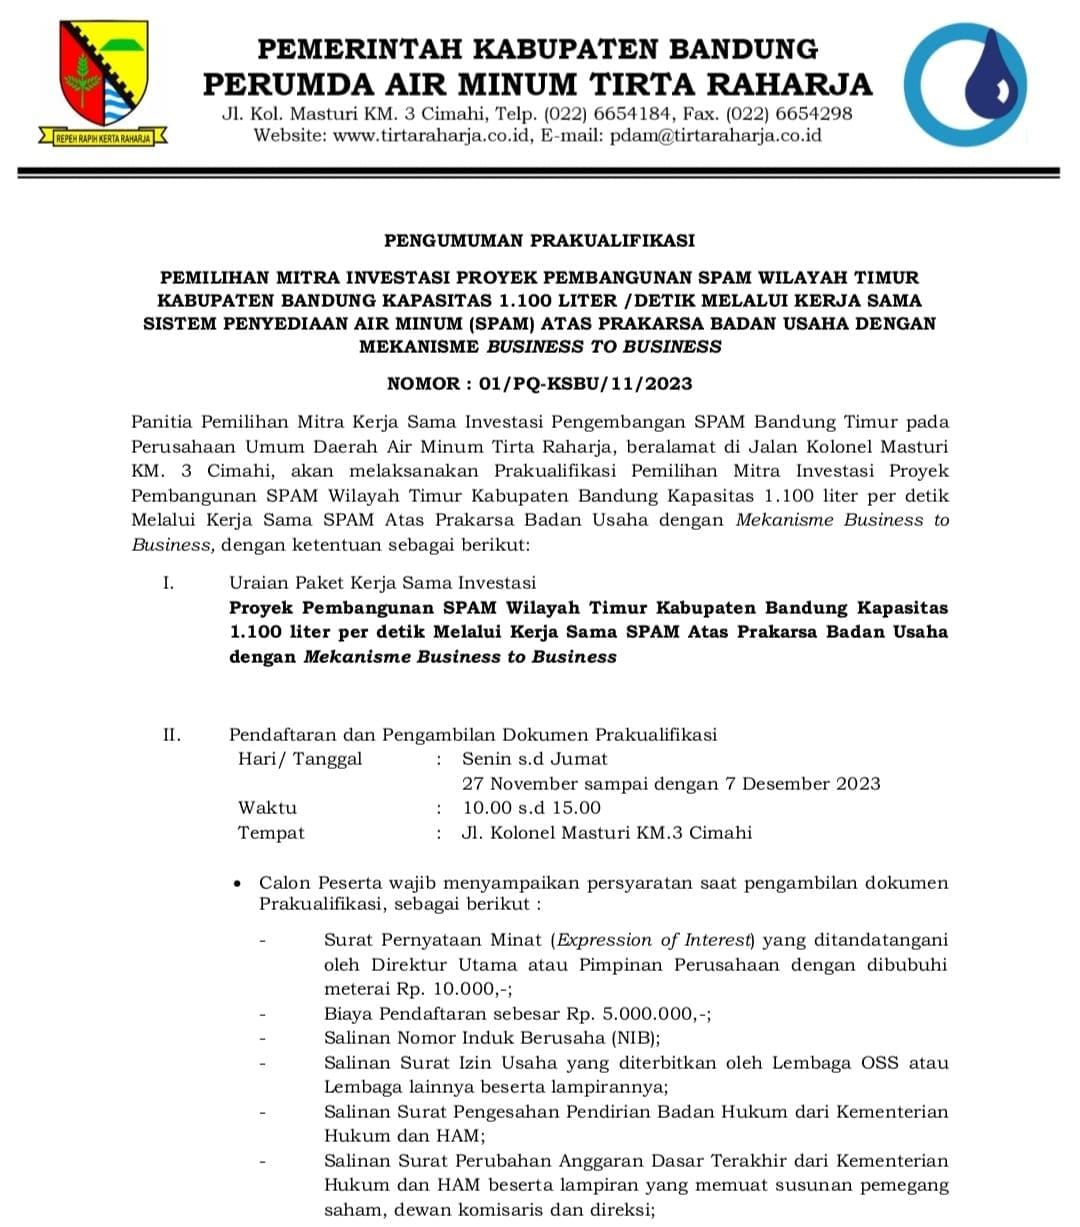 Pengumuman Prakualifikasi Kerja Sama Investasi Pengembangan SPAM Wilayah Timur Kabupaten Bandung Kapasitas 1.100 liter per detik